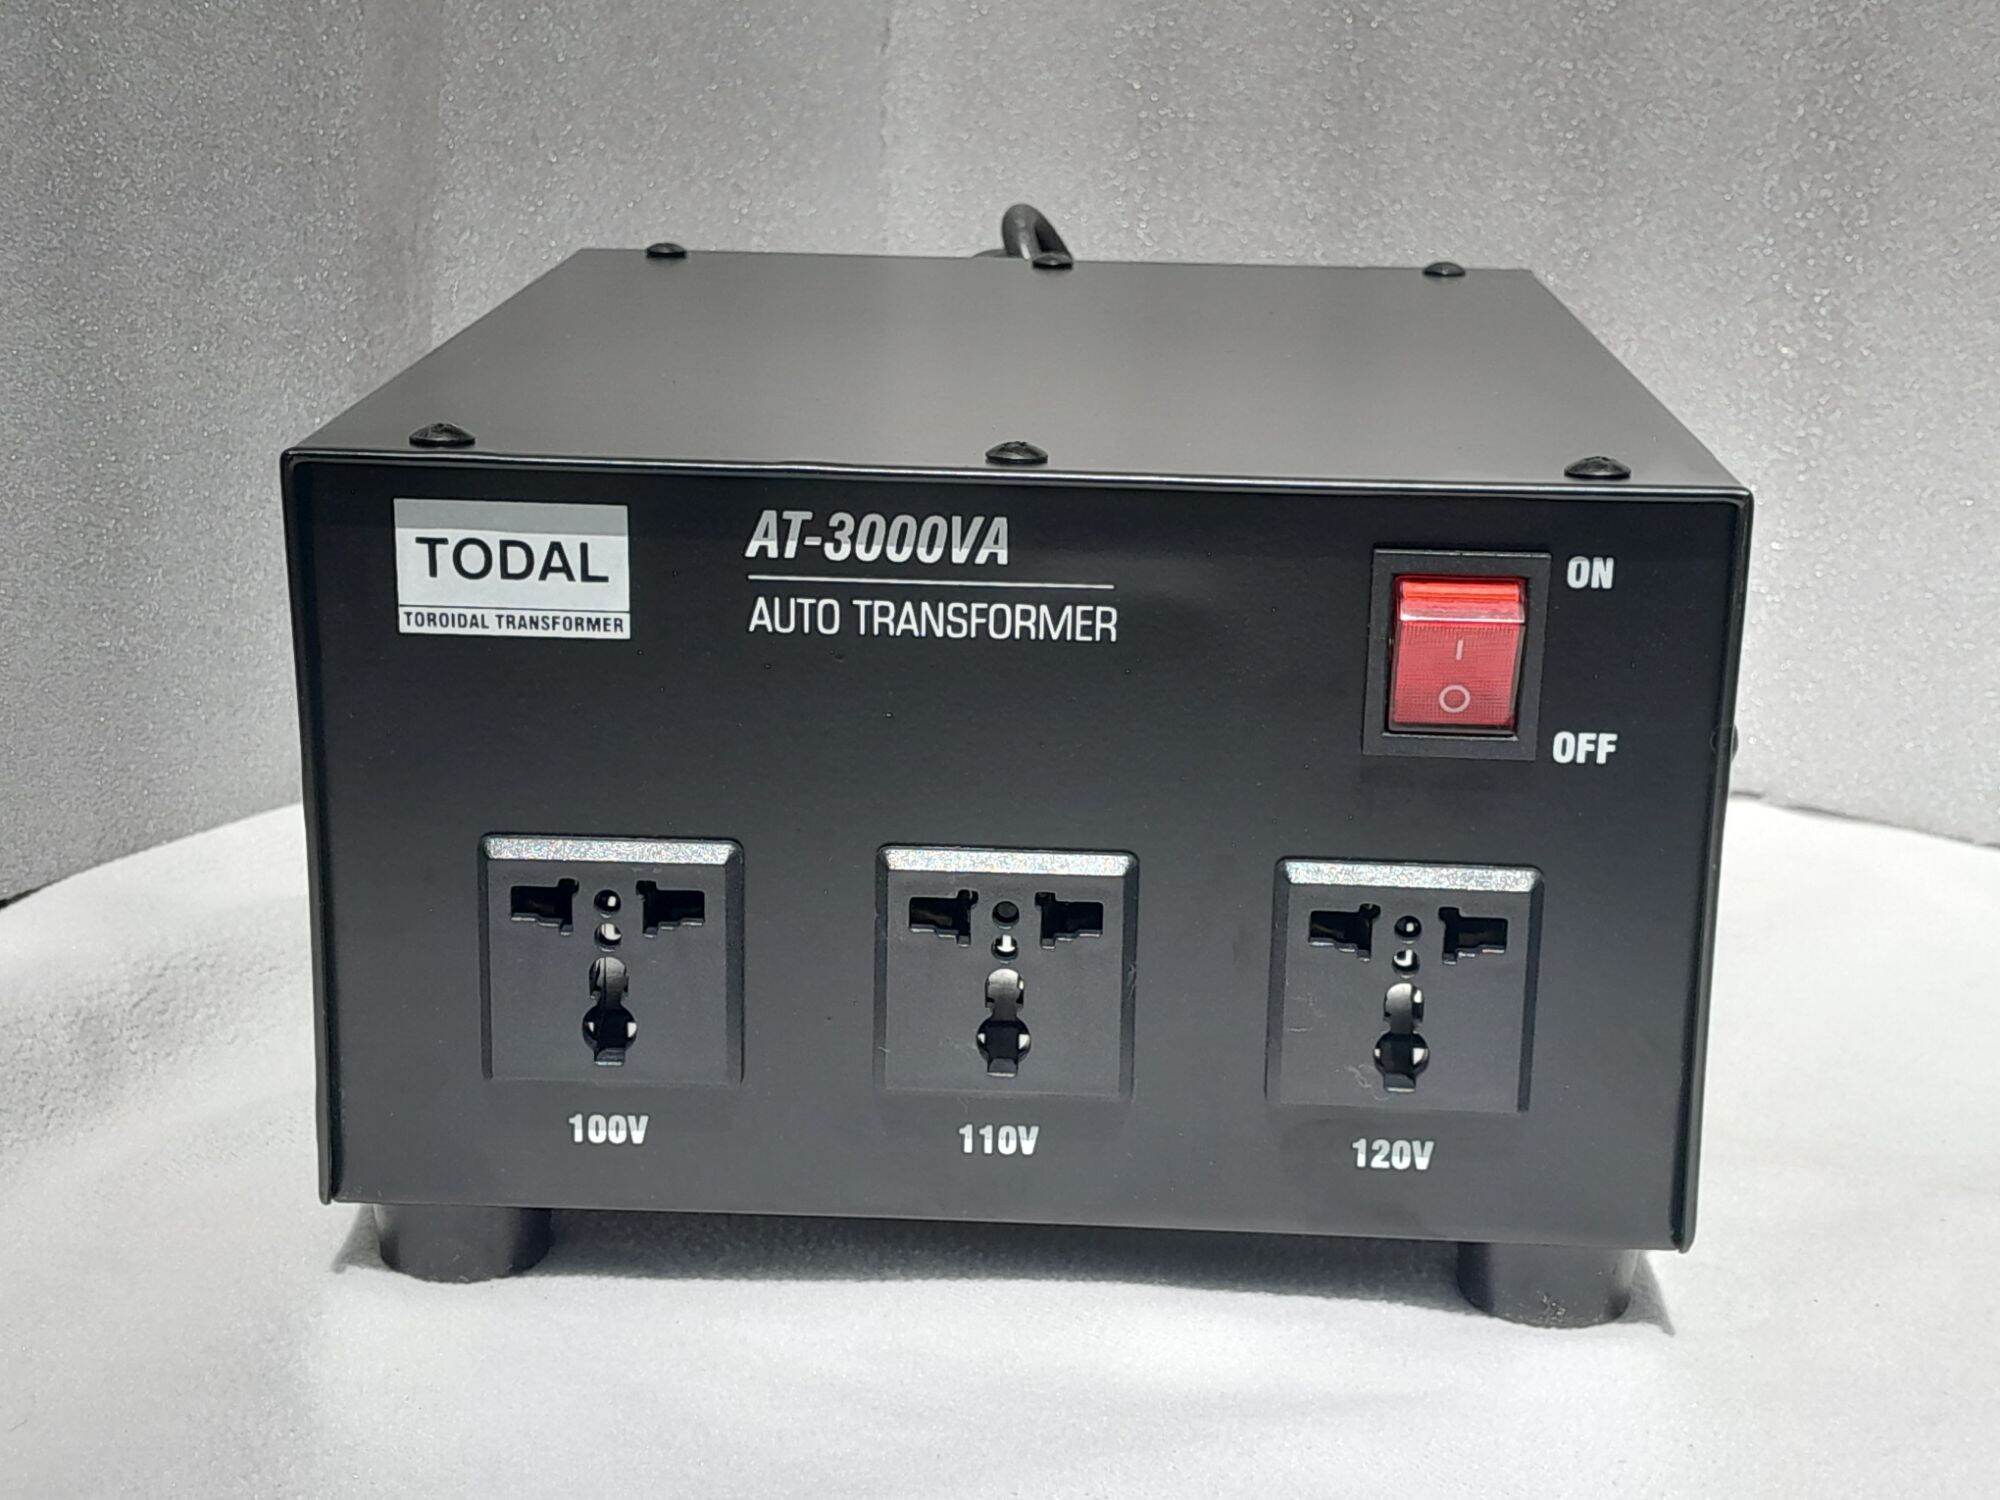 Biến áp xuyến đổi nguồn TODAL 3 kVA dây đồng - Điện vào 220V - Điện ra 100V/110V/120V dùng cho thiết bị điện nội địa Nhật Mỹ Đài Loan